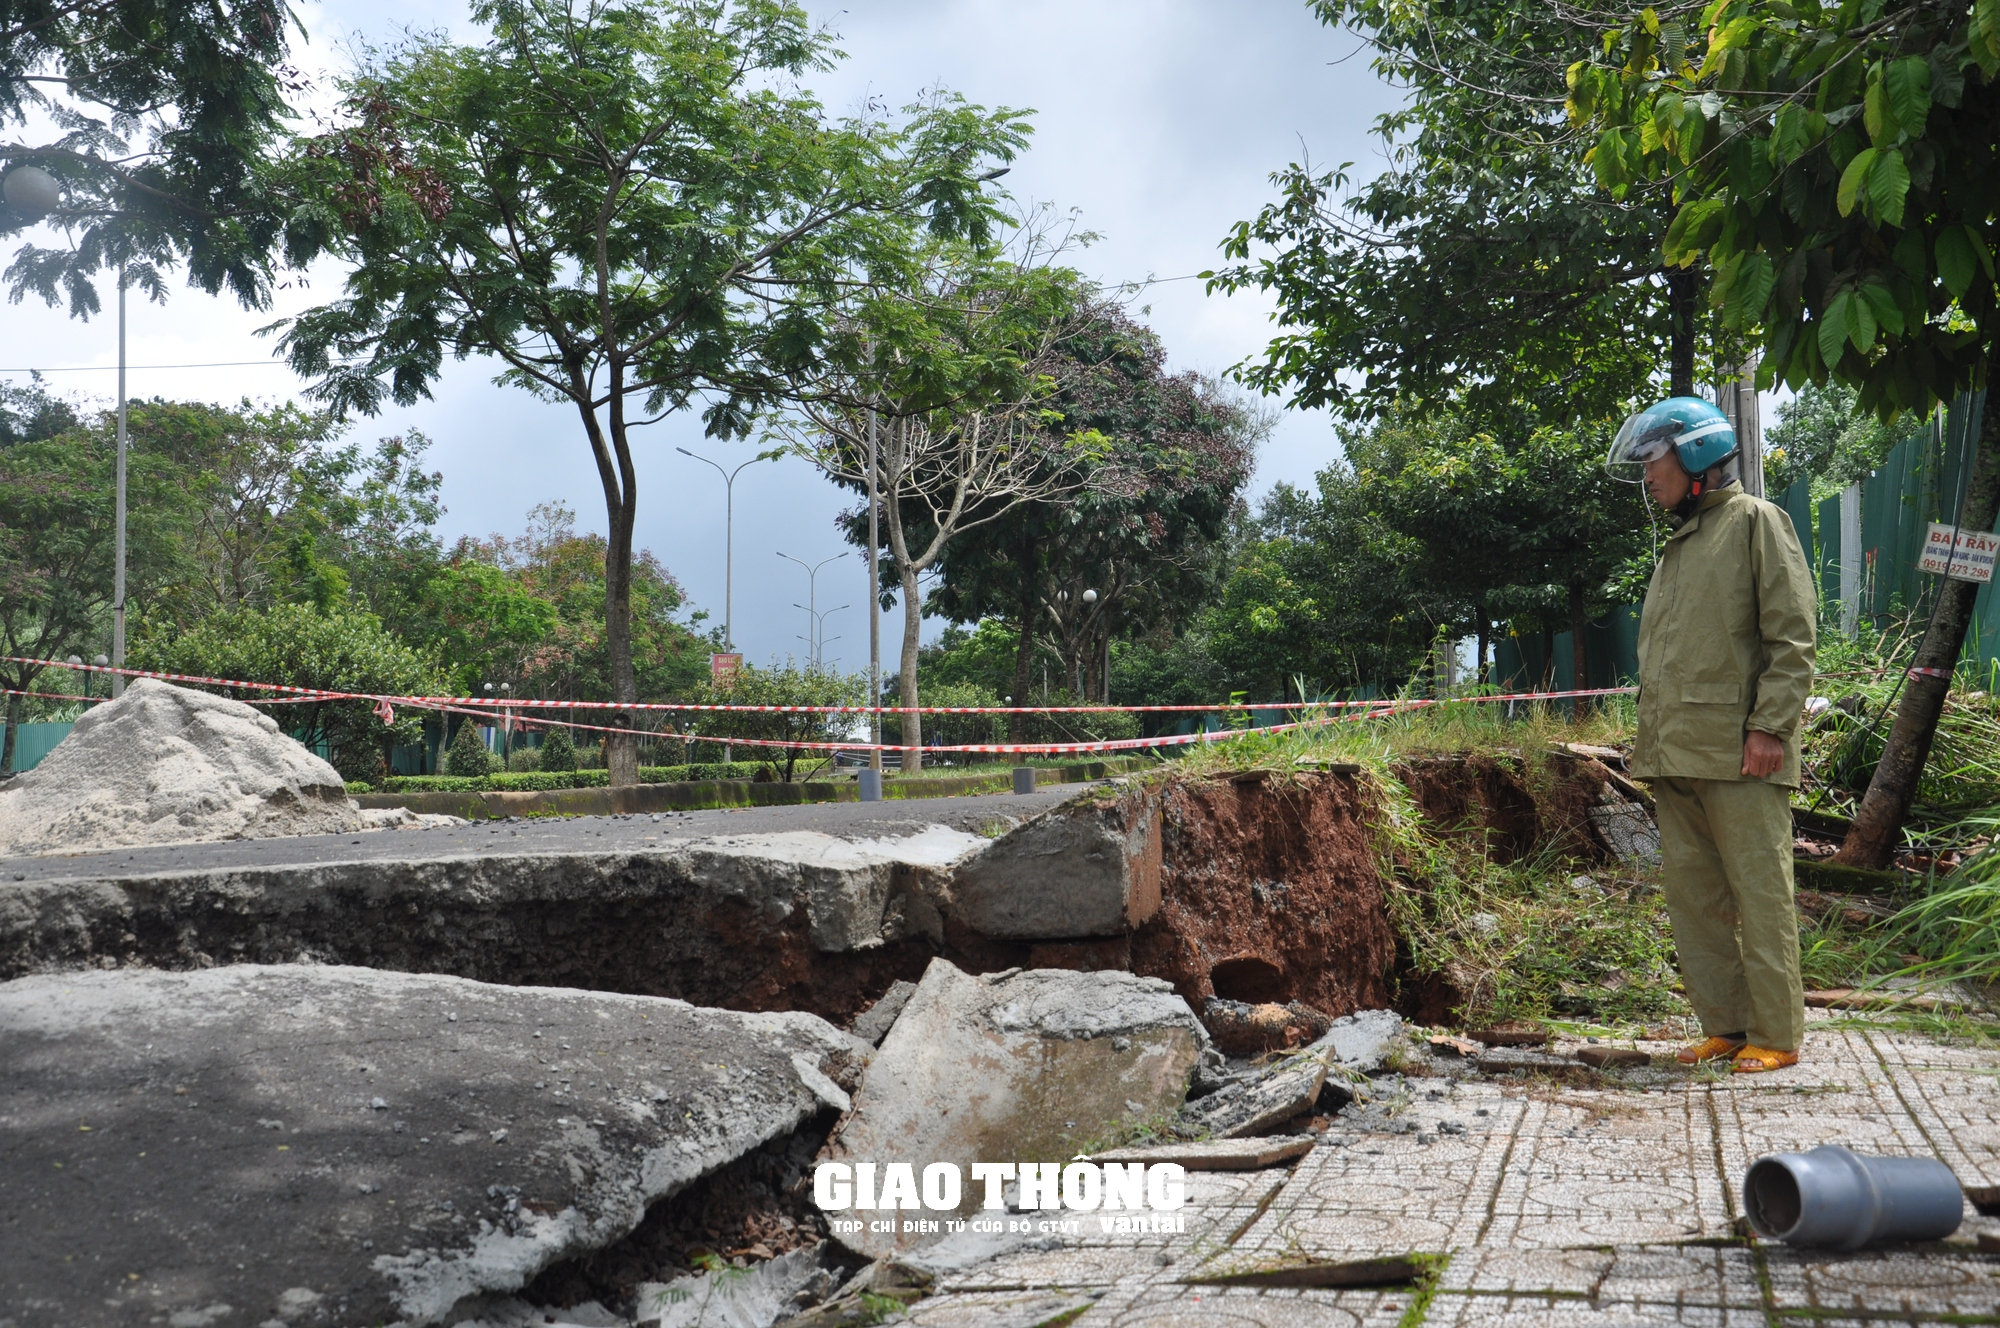 Cận cảnh sụt lún QL14 ở Đắk Nông: Vết sụt trượt liên tục mở rộng, nguy cơ mất đường - Ảnh 4.